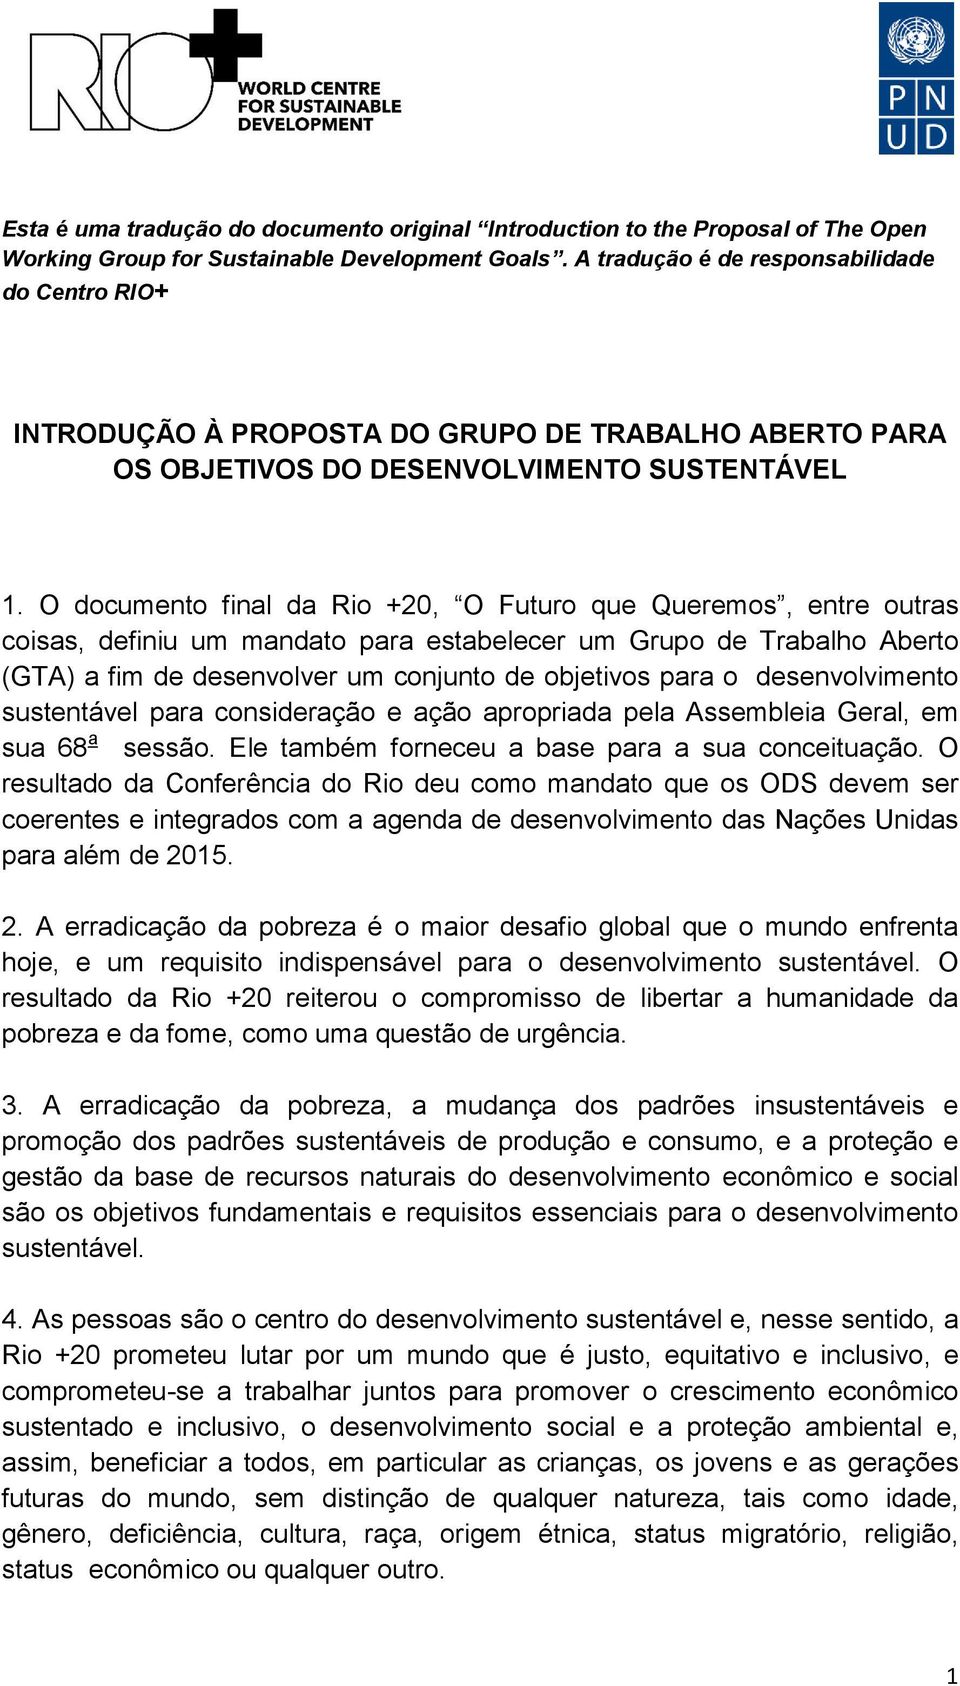 O documento final da Rio +20, O Futuro que Queremos, entre outras coisas, definiu um mandato para estabelecer um Grupo de Trabalho Aberto (GTA) a fim de desenvolver um conjunto de objetivos para o